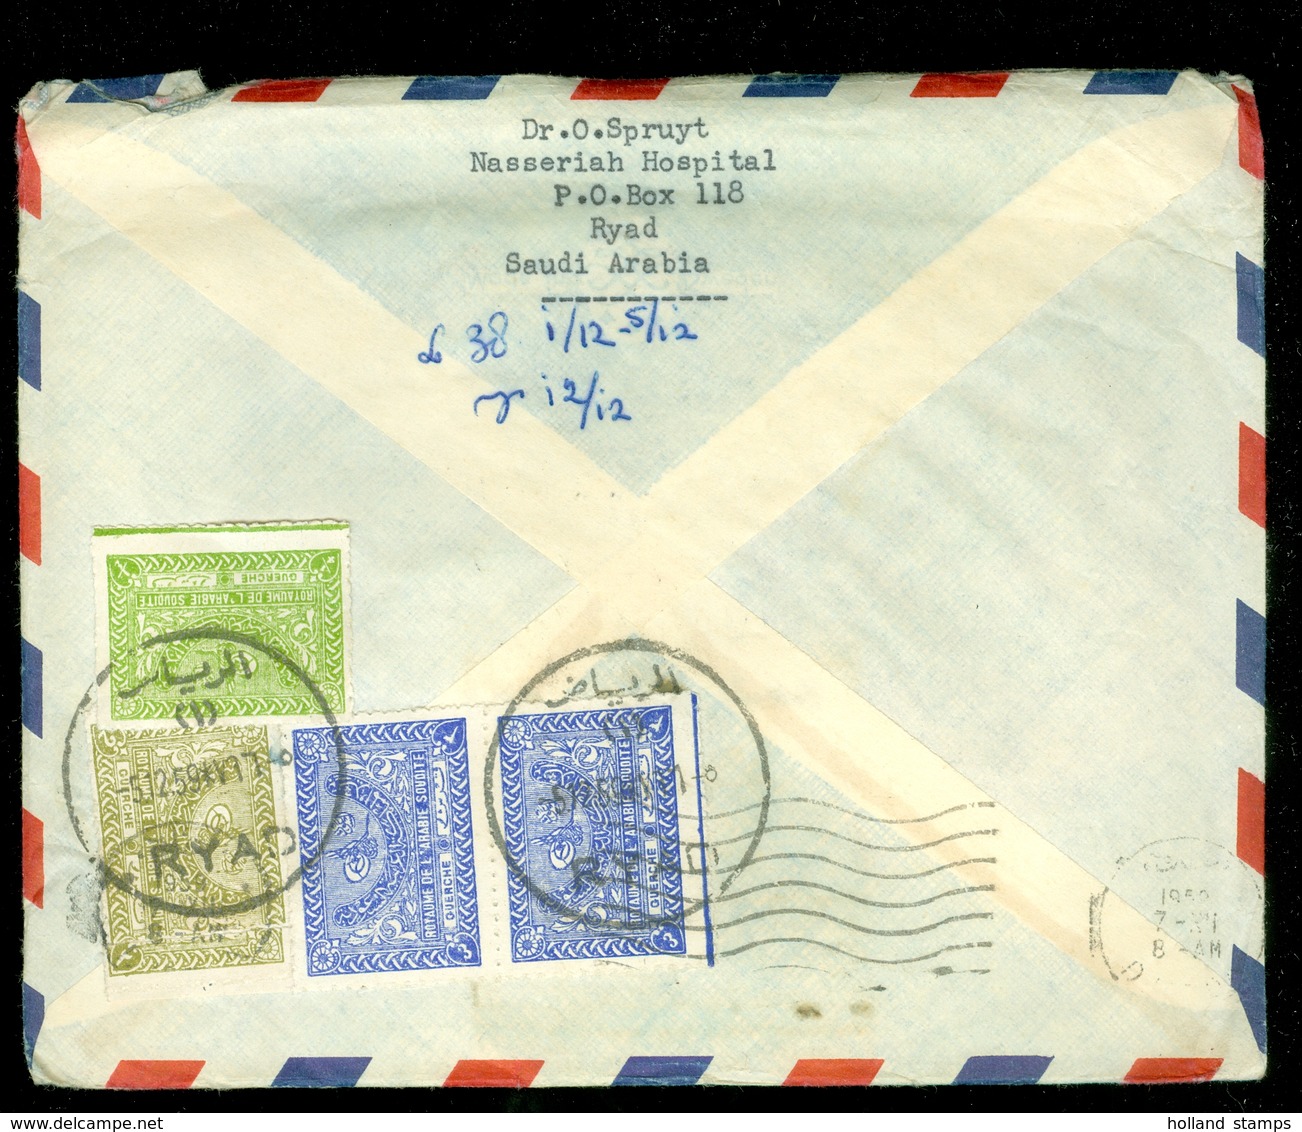 Saoedi-Arabië * Saudi Arabia * BRIEFOMSLAG Uit 1959 By Air Mail Van RYAD Naar DEN HAAG NEDERLAND   (11.454e) - Saudi Arabia